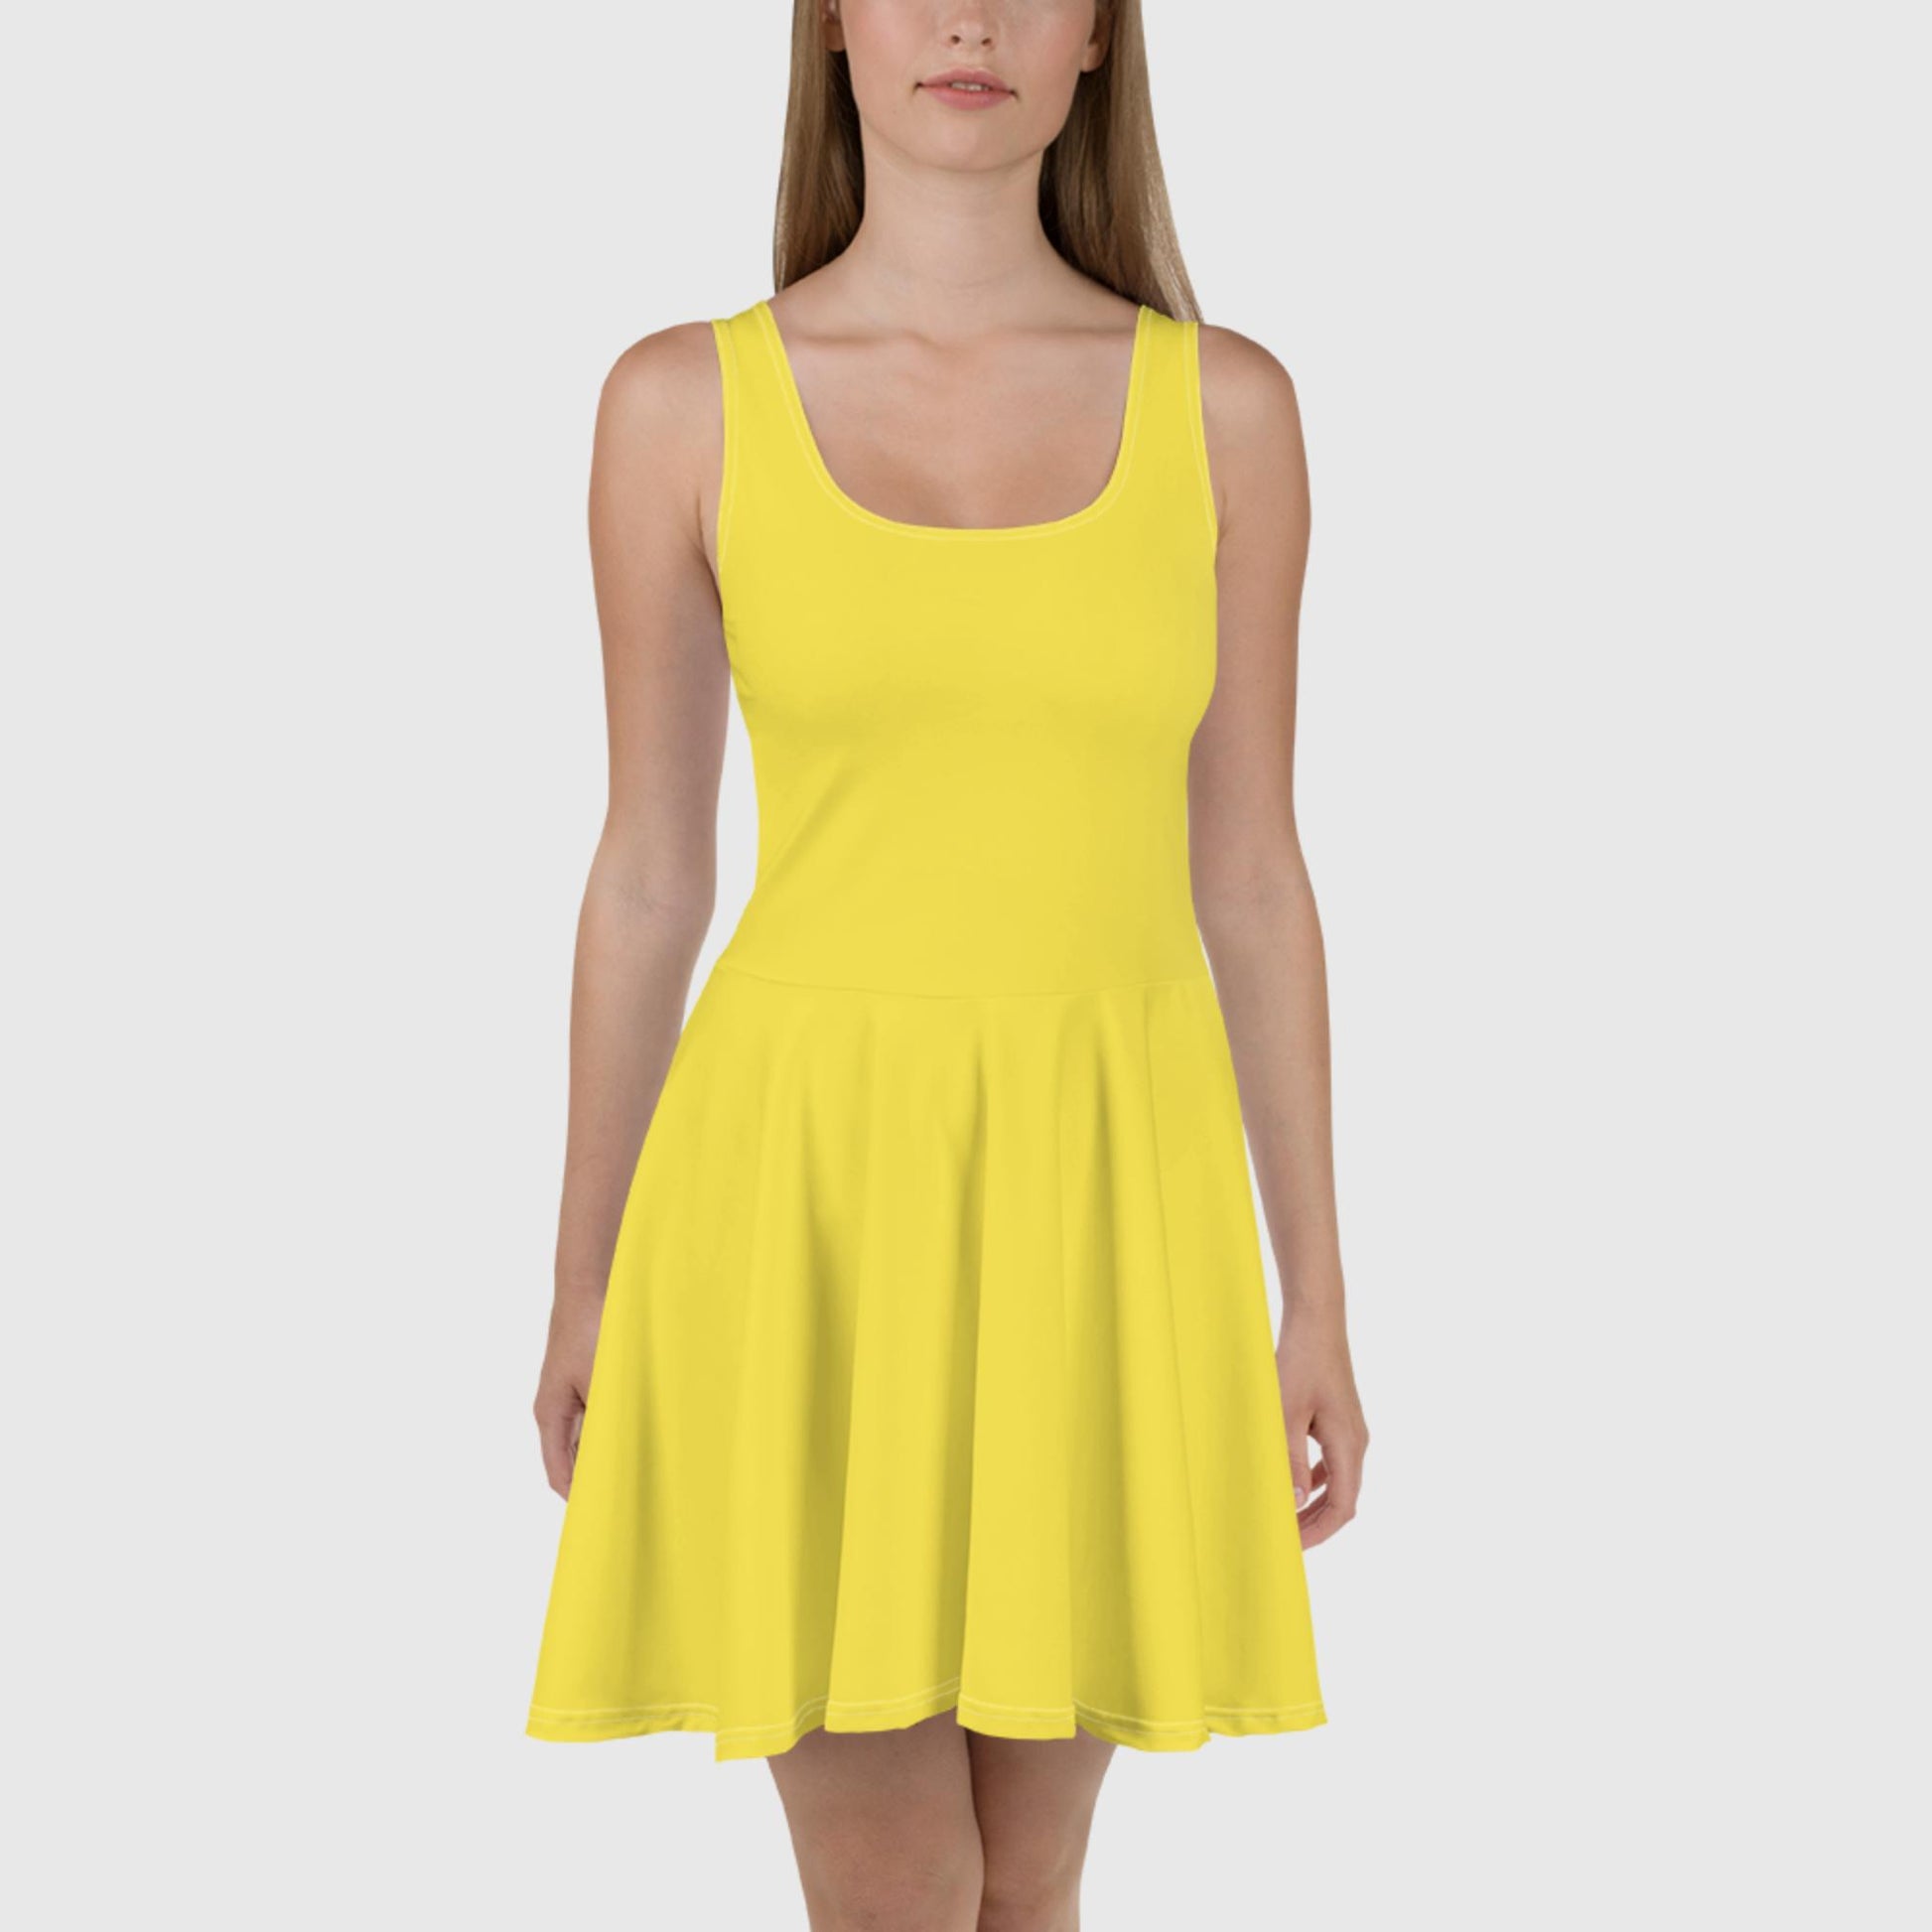 Skater Dress - Yellow - Sunset Harbor Clothing